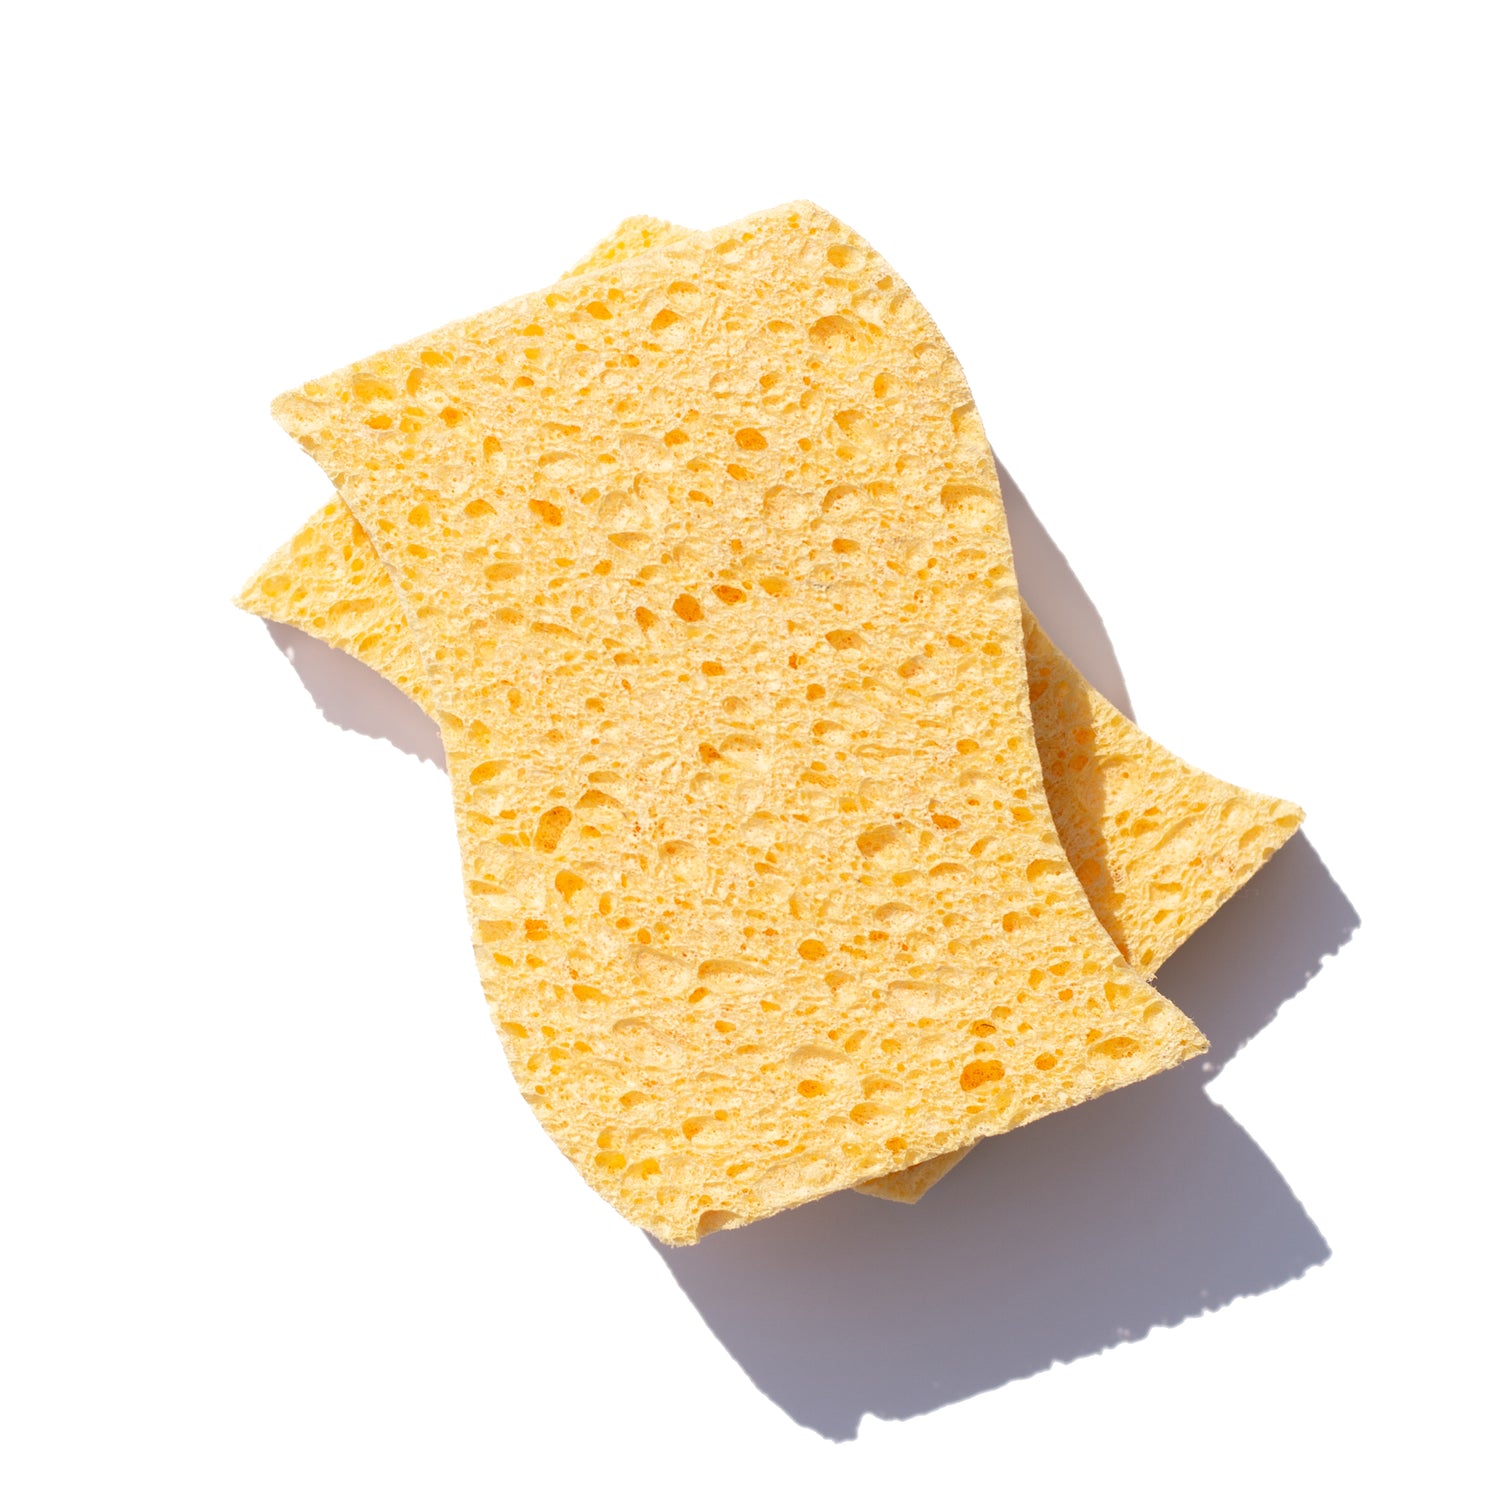 Fto Custom Biodegradable Sponges Image White Background 2 ?v=1688591374&width=1500